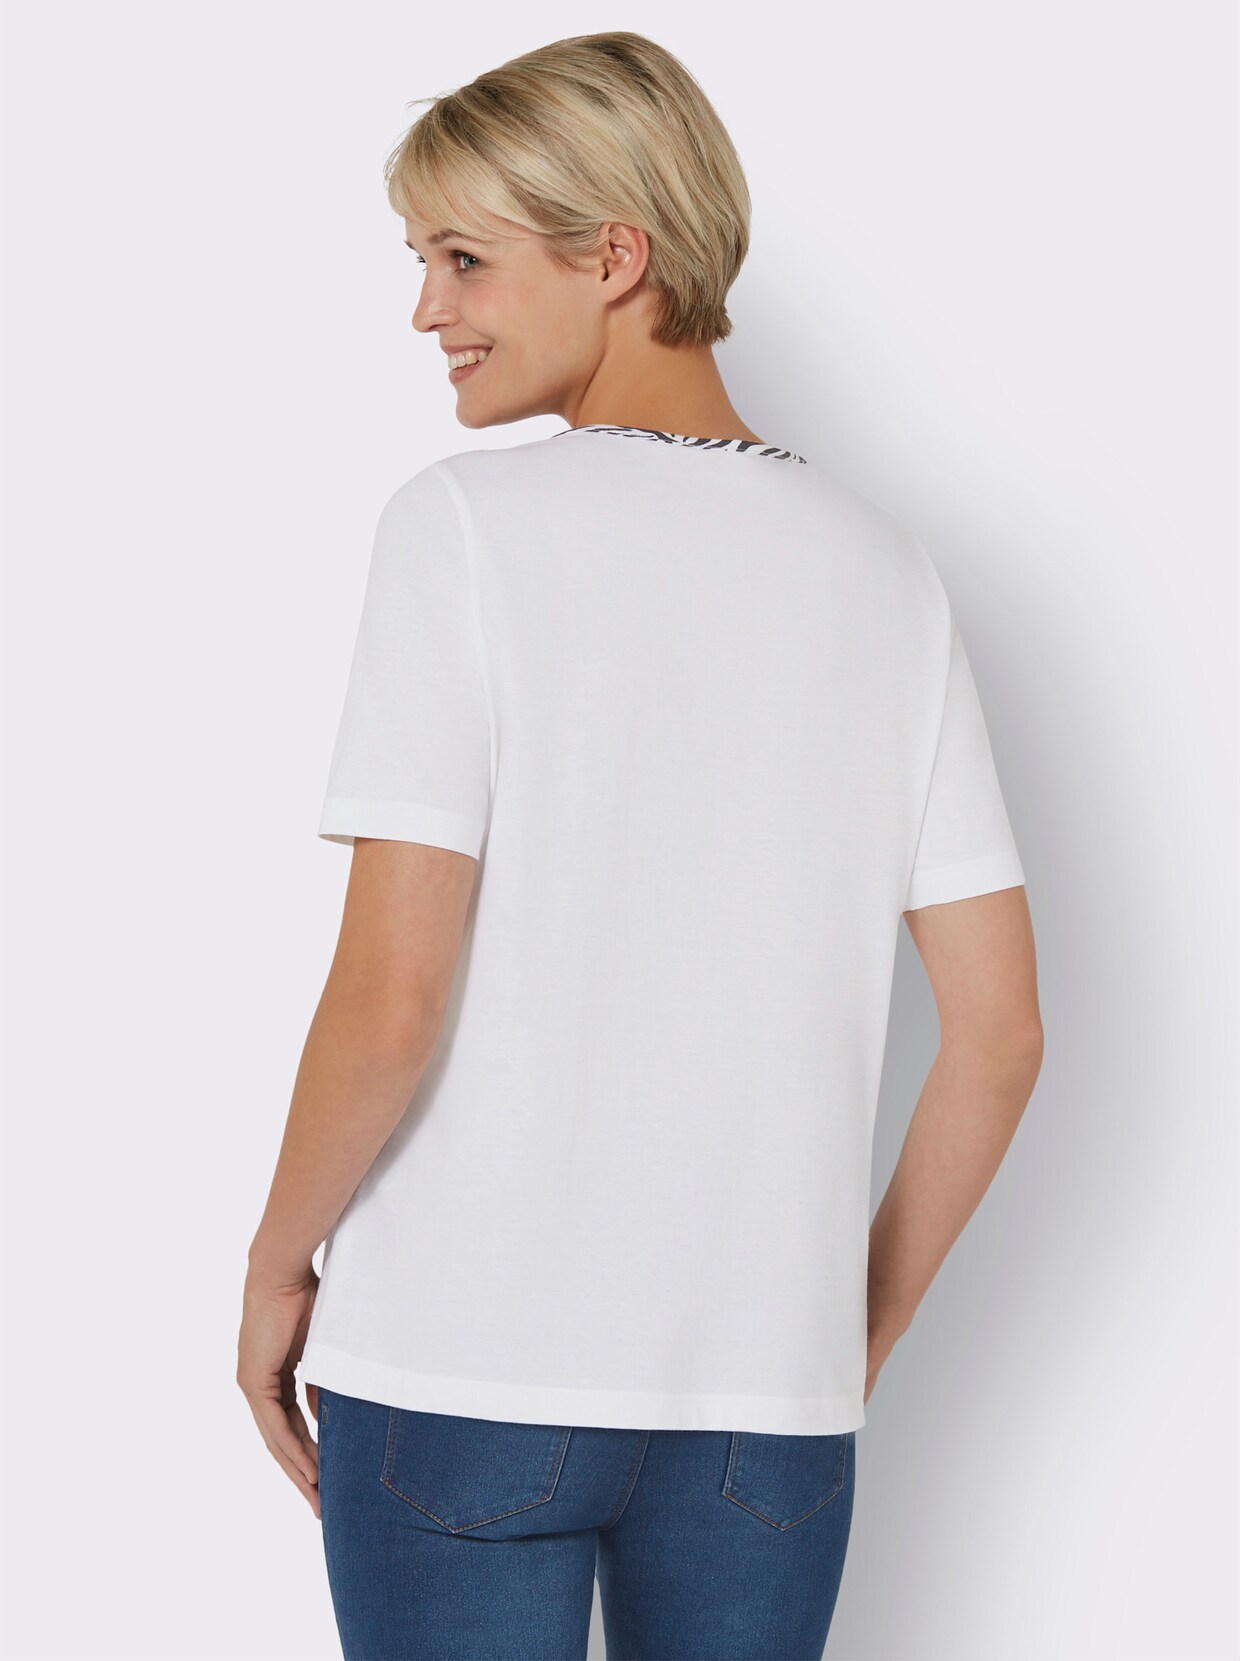 Tričko s krátkým rukávem - bílá-černá-vzor